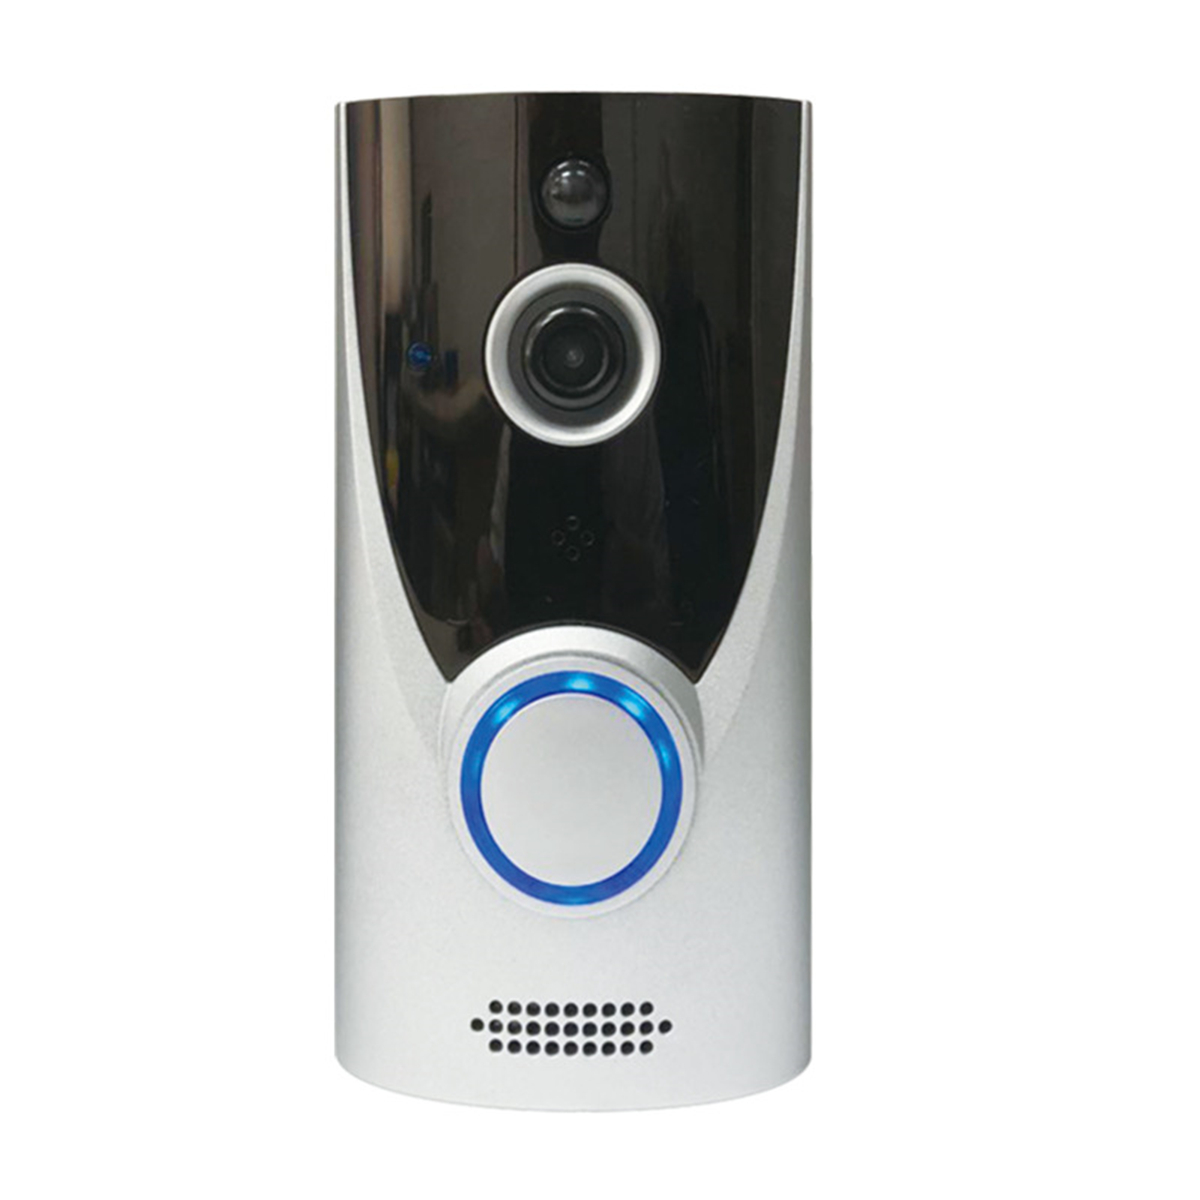 

LK-DB06 1080P Беспроводная связь Smart Wifi Видеодомофон камера Домофон Телефон дверной звонок Сигнализация